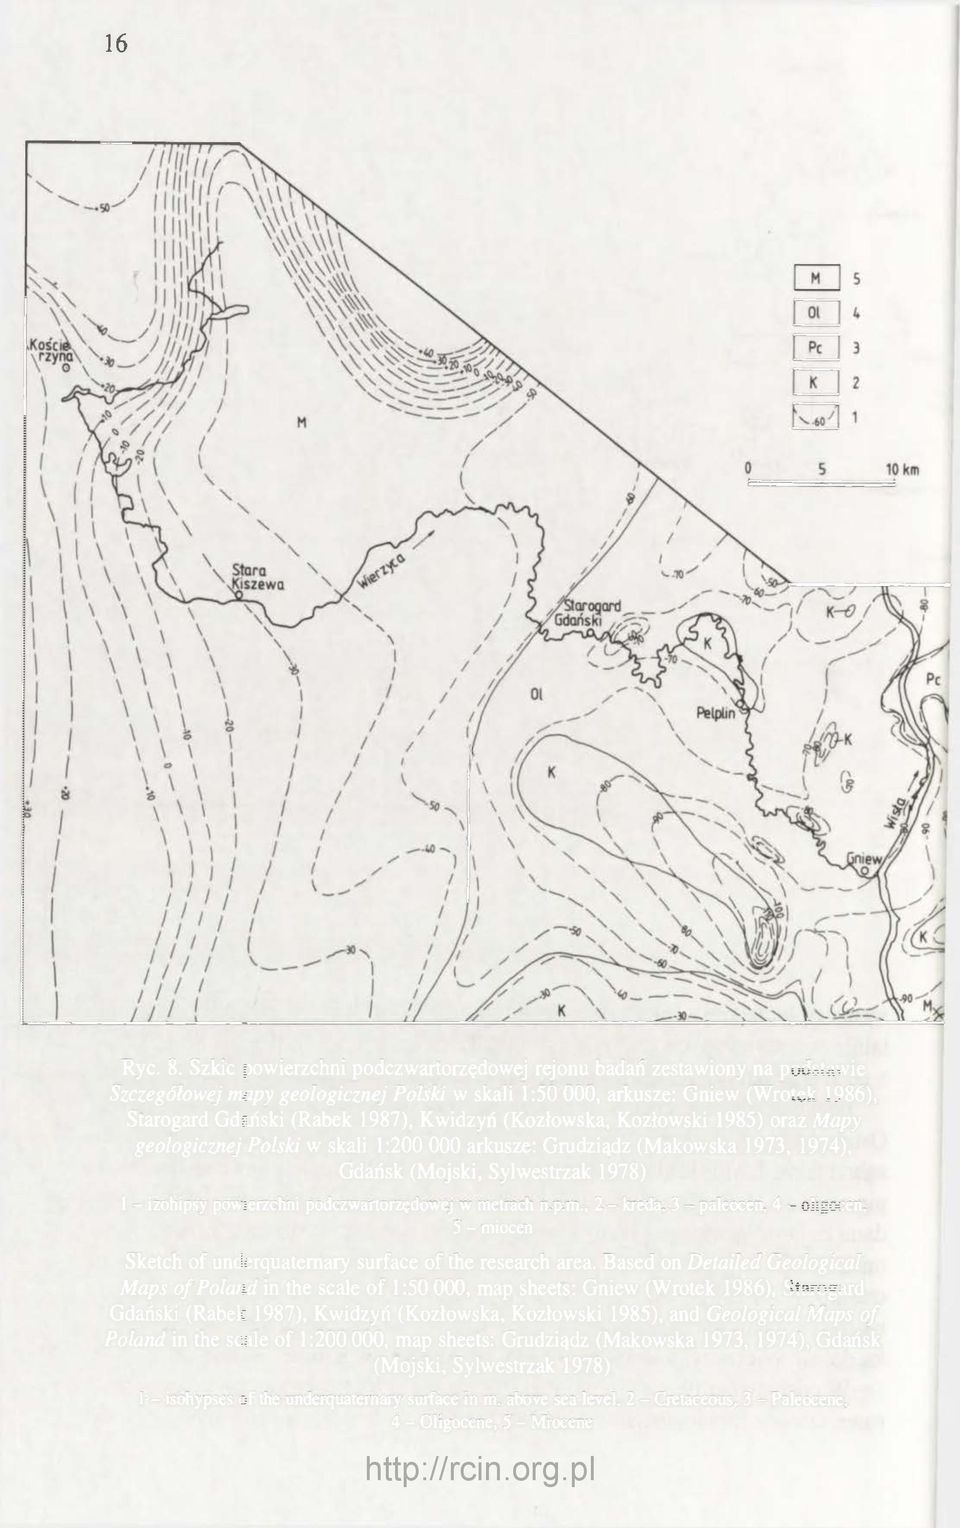 (Kozłowska, Kozłowski 1985) oraz Mapy geologicznej Polski w skali 1:200 000 arkusze: Grudziądz (Makowska 1973, 1974), Gdańsk (Mojski, Sylwestrzak 1978) 1 - izohipsy powierzchni podczwartorzędowej w